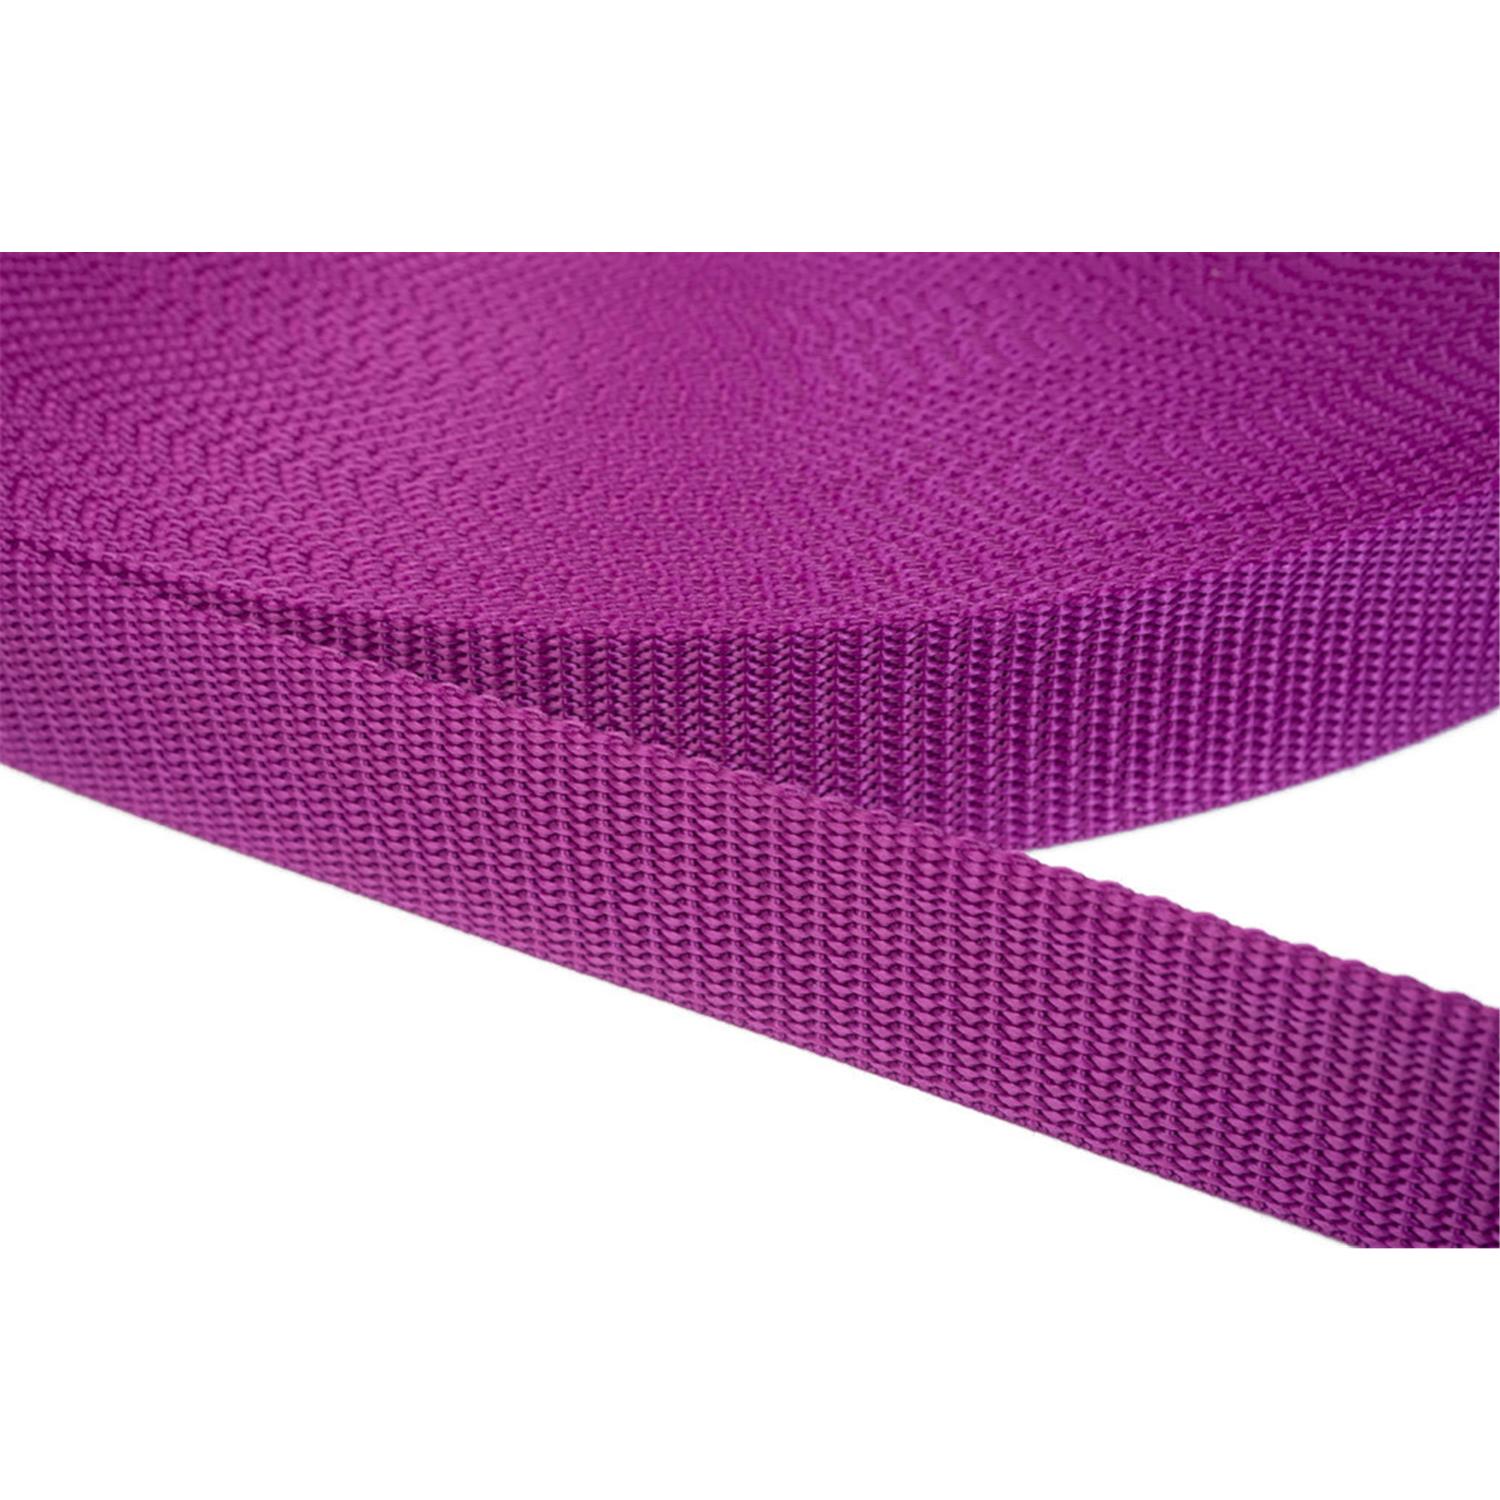 Gurtband 50mm breit aus Polypropylen in 41 Farben 22 - violettrot 6 Meter